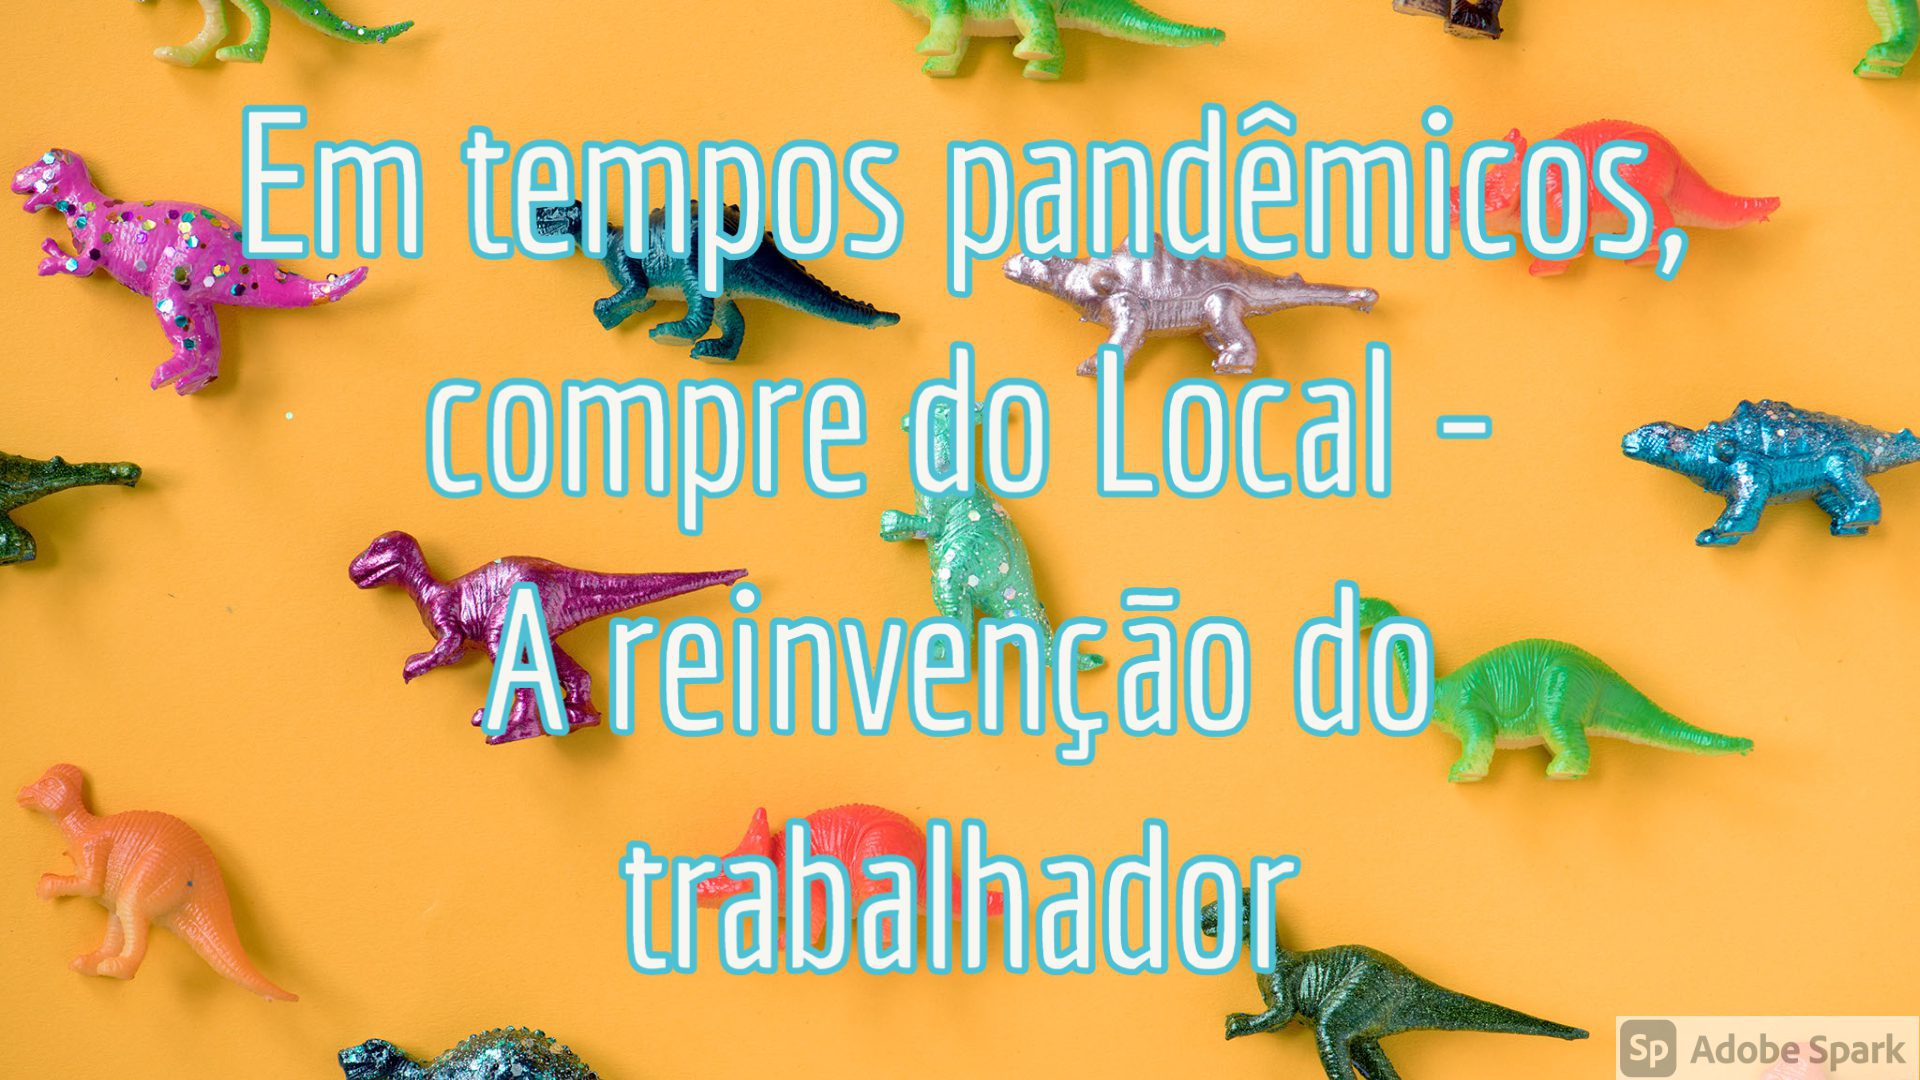 You are currently viewing Geografia e História – Em tempos pandêmicos, compre do Local – A reinvenção do trabalhador